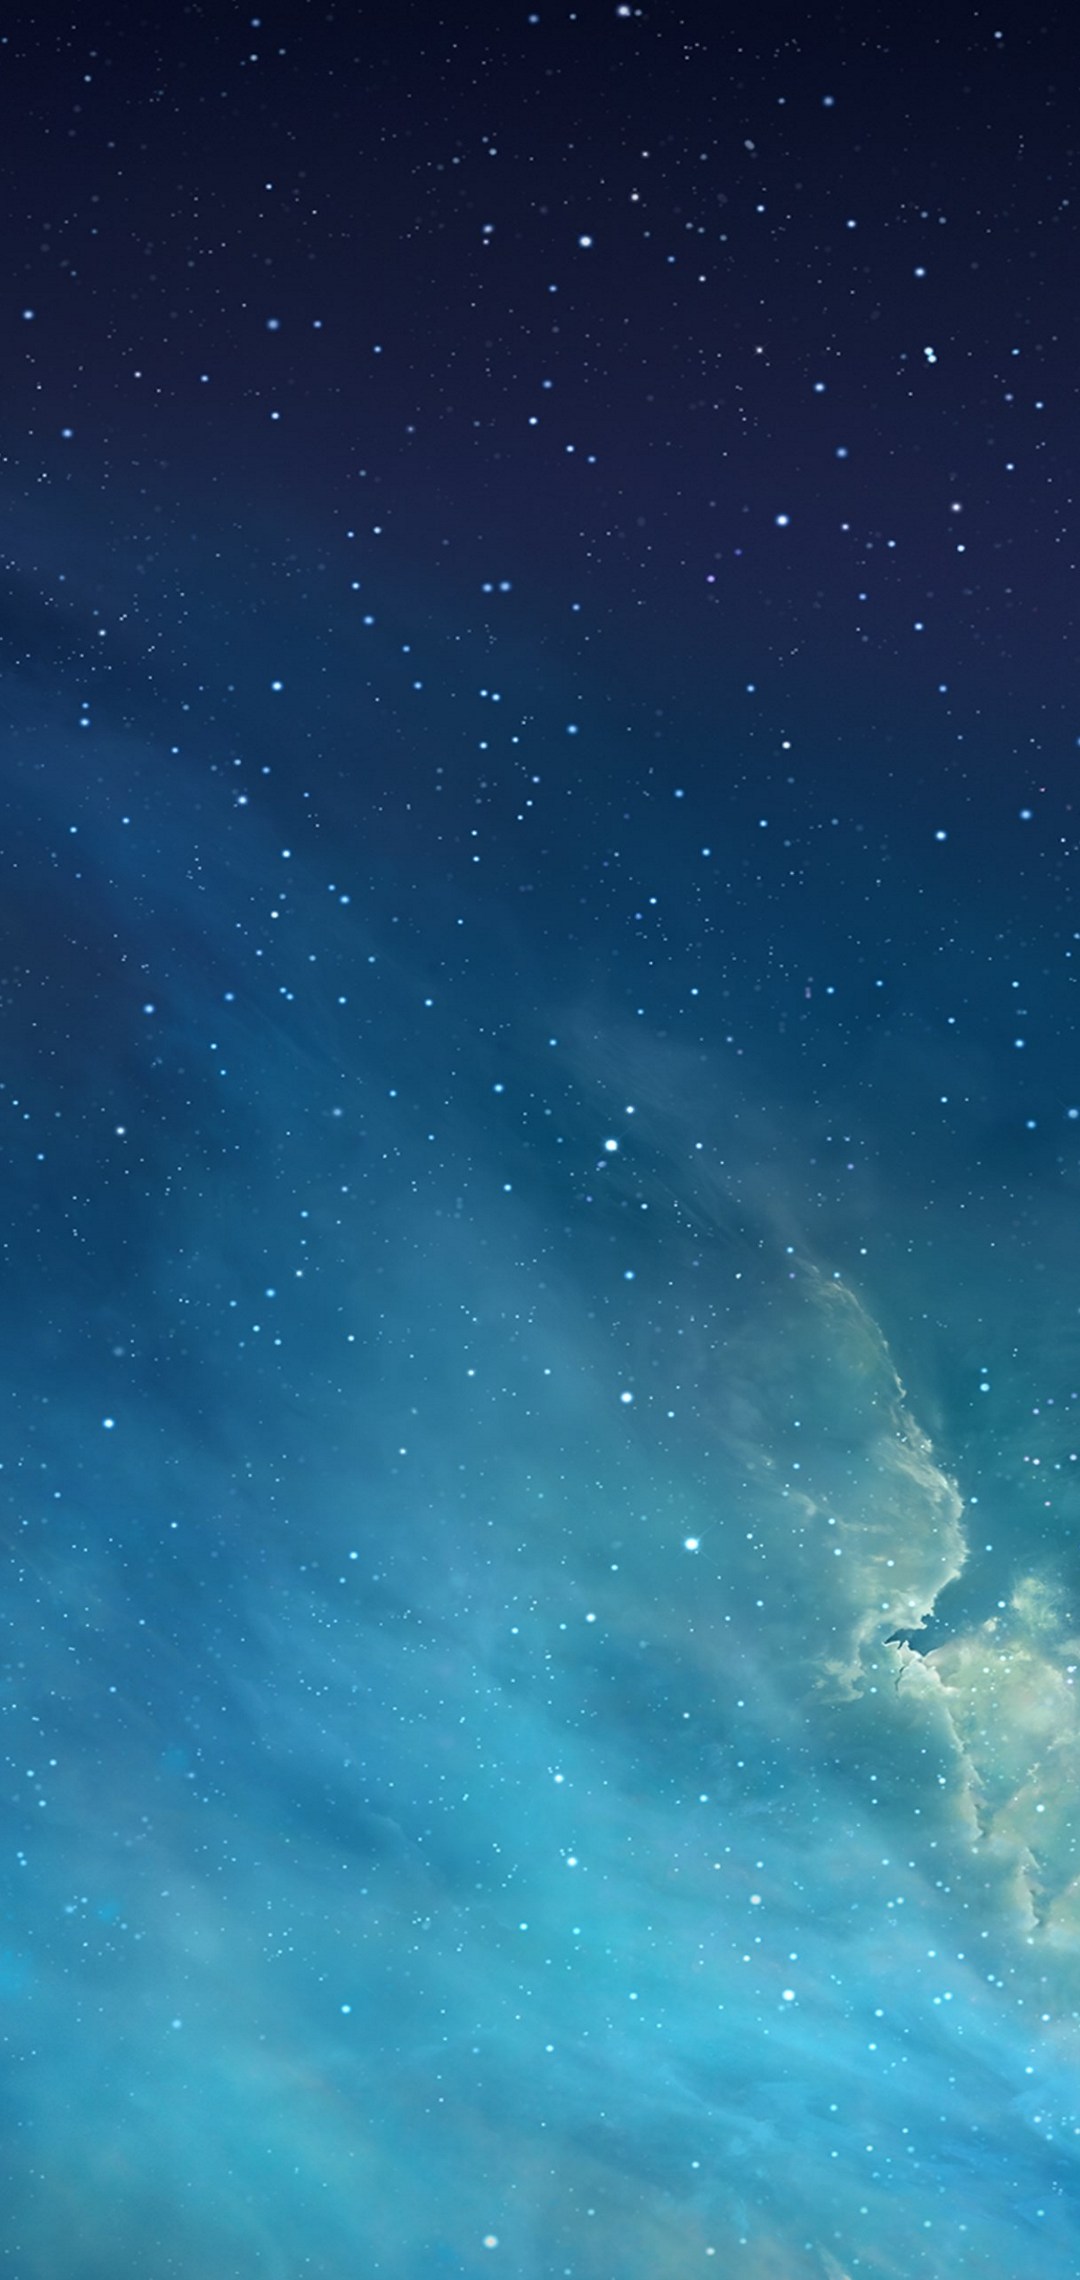 綺麗な水色の銀河 雲 Zenfone Max Pro M2 Androidスマホ壁紙 待ち受け スマラン